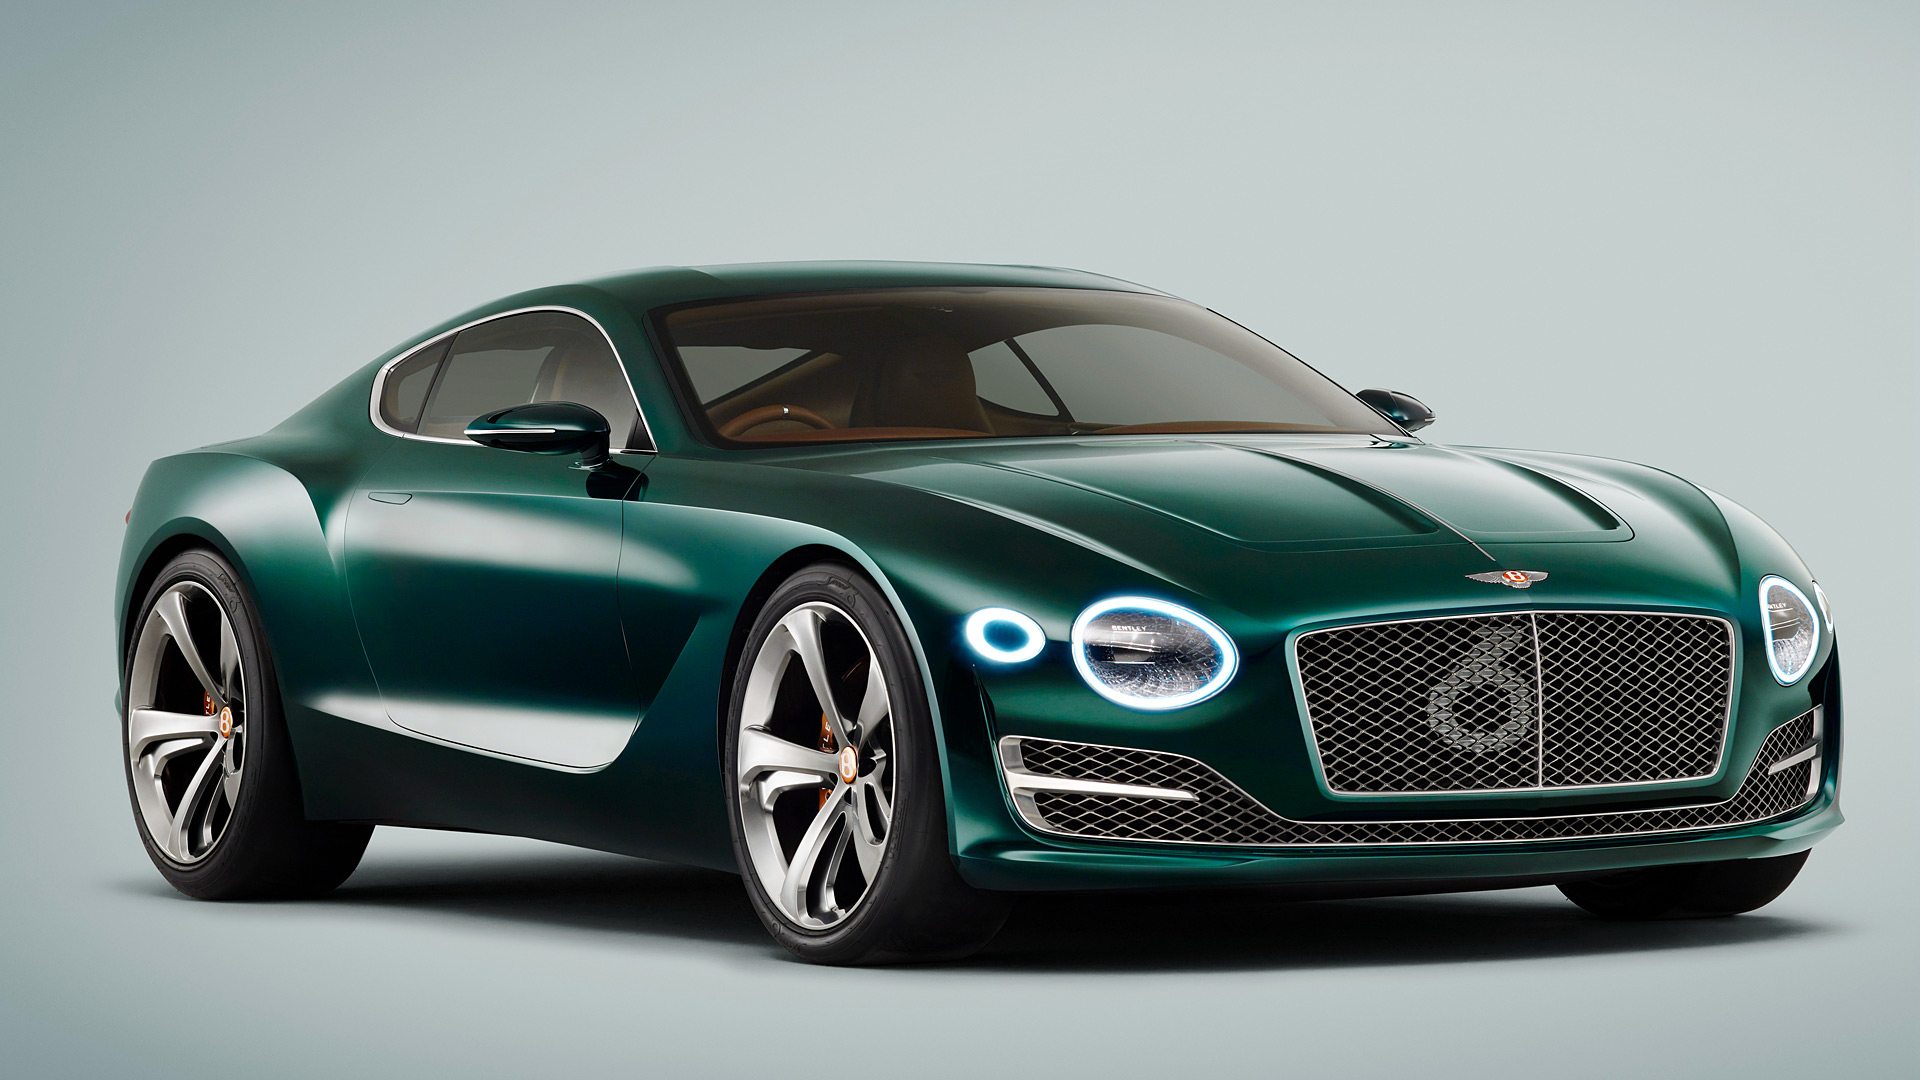  2015 Bentley EXP 10 Speed 6 Concept Wallpaper.